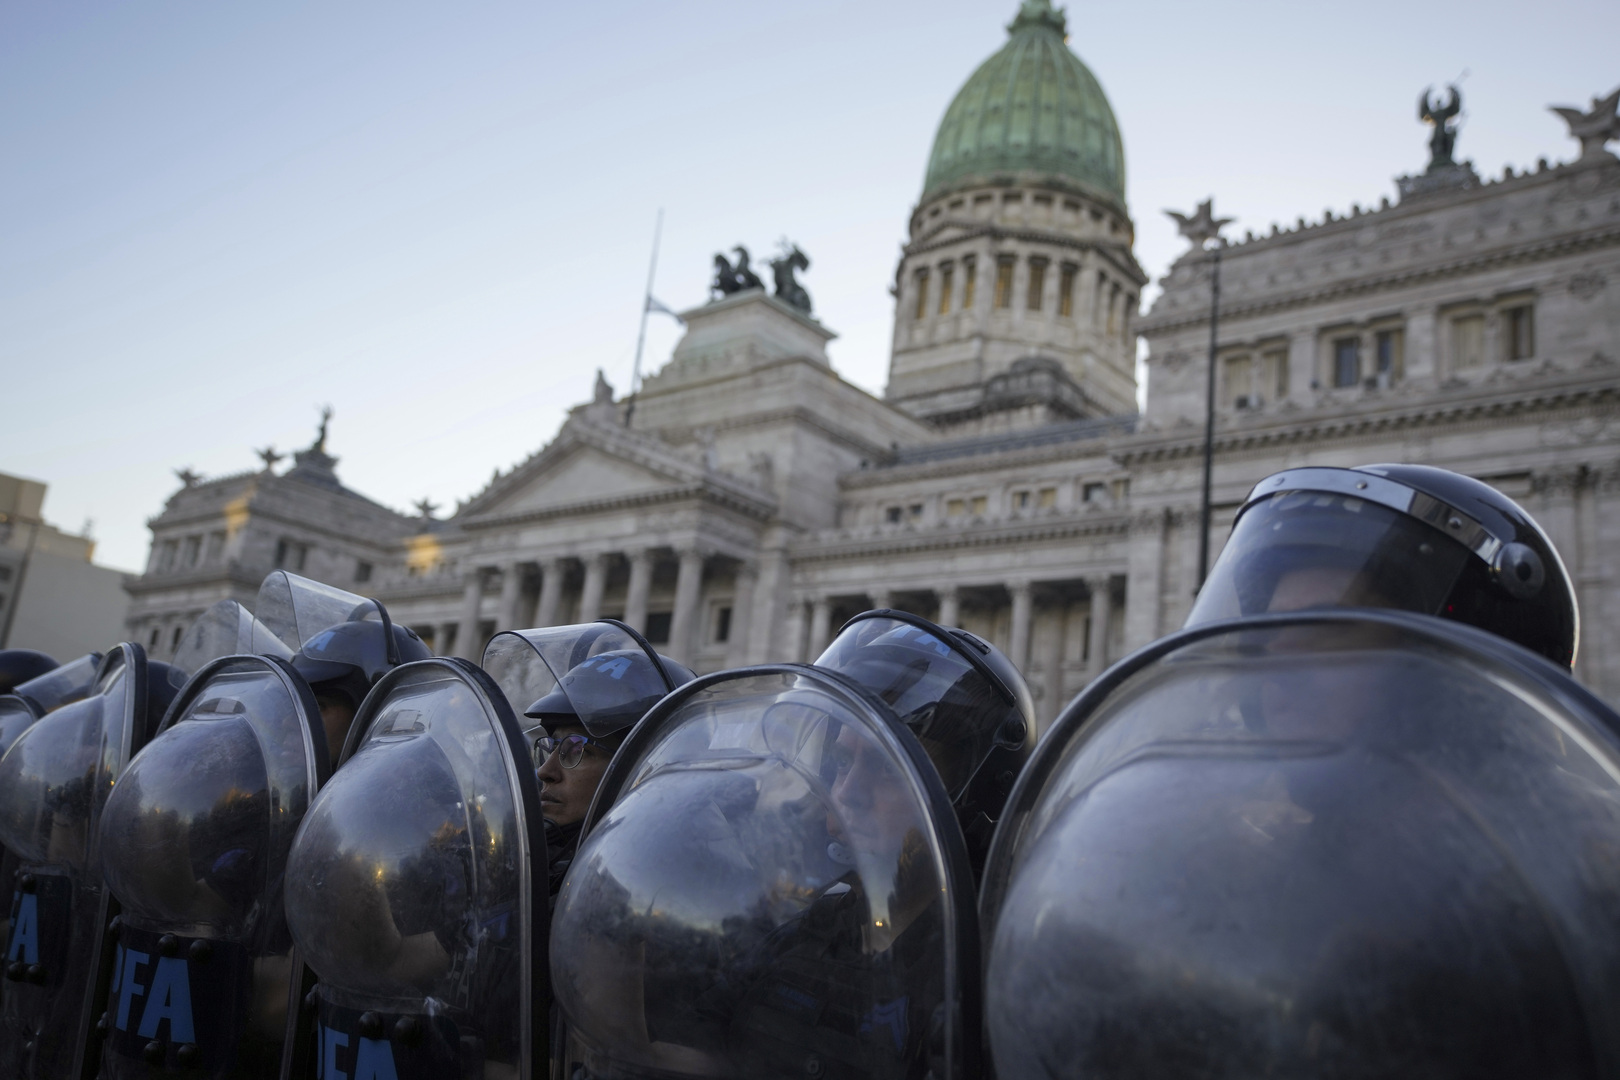 الأرجنتين.. إصلاحات ميلي تحصل على الموافقة المبدئية في مجلس النواب وسط احتجاجات